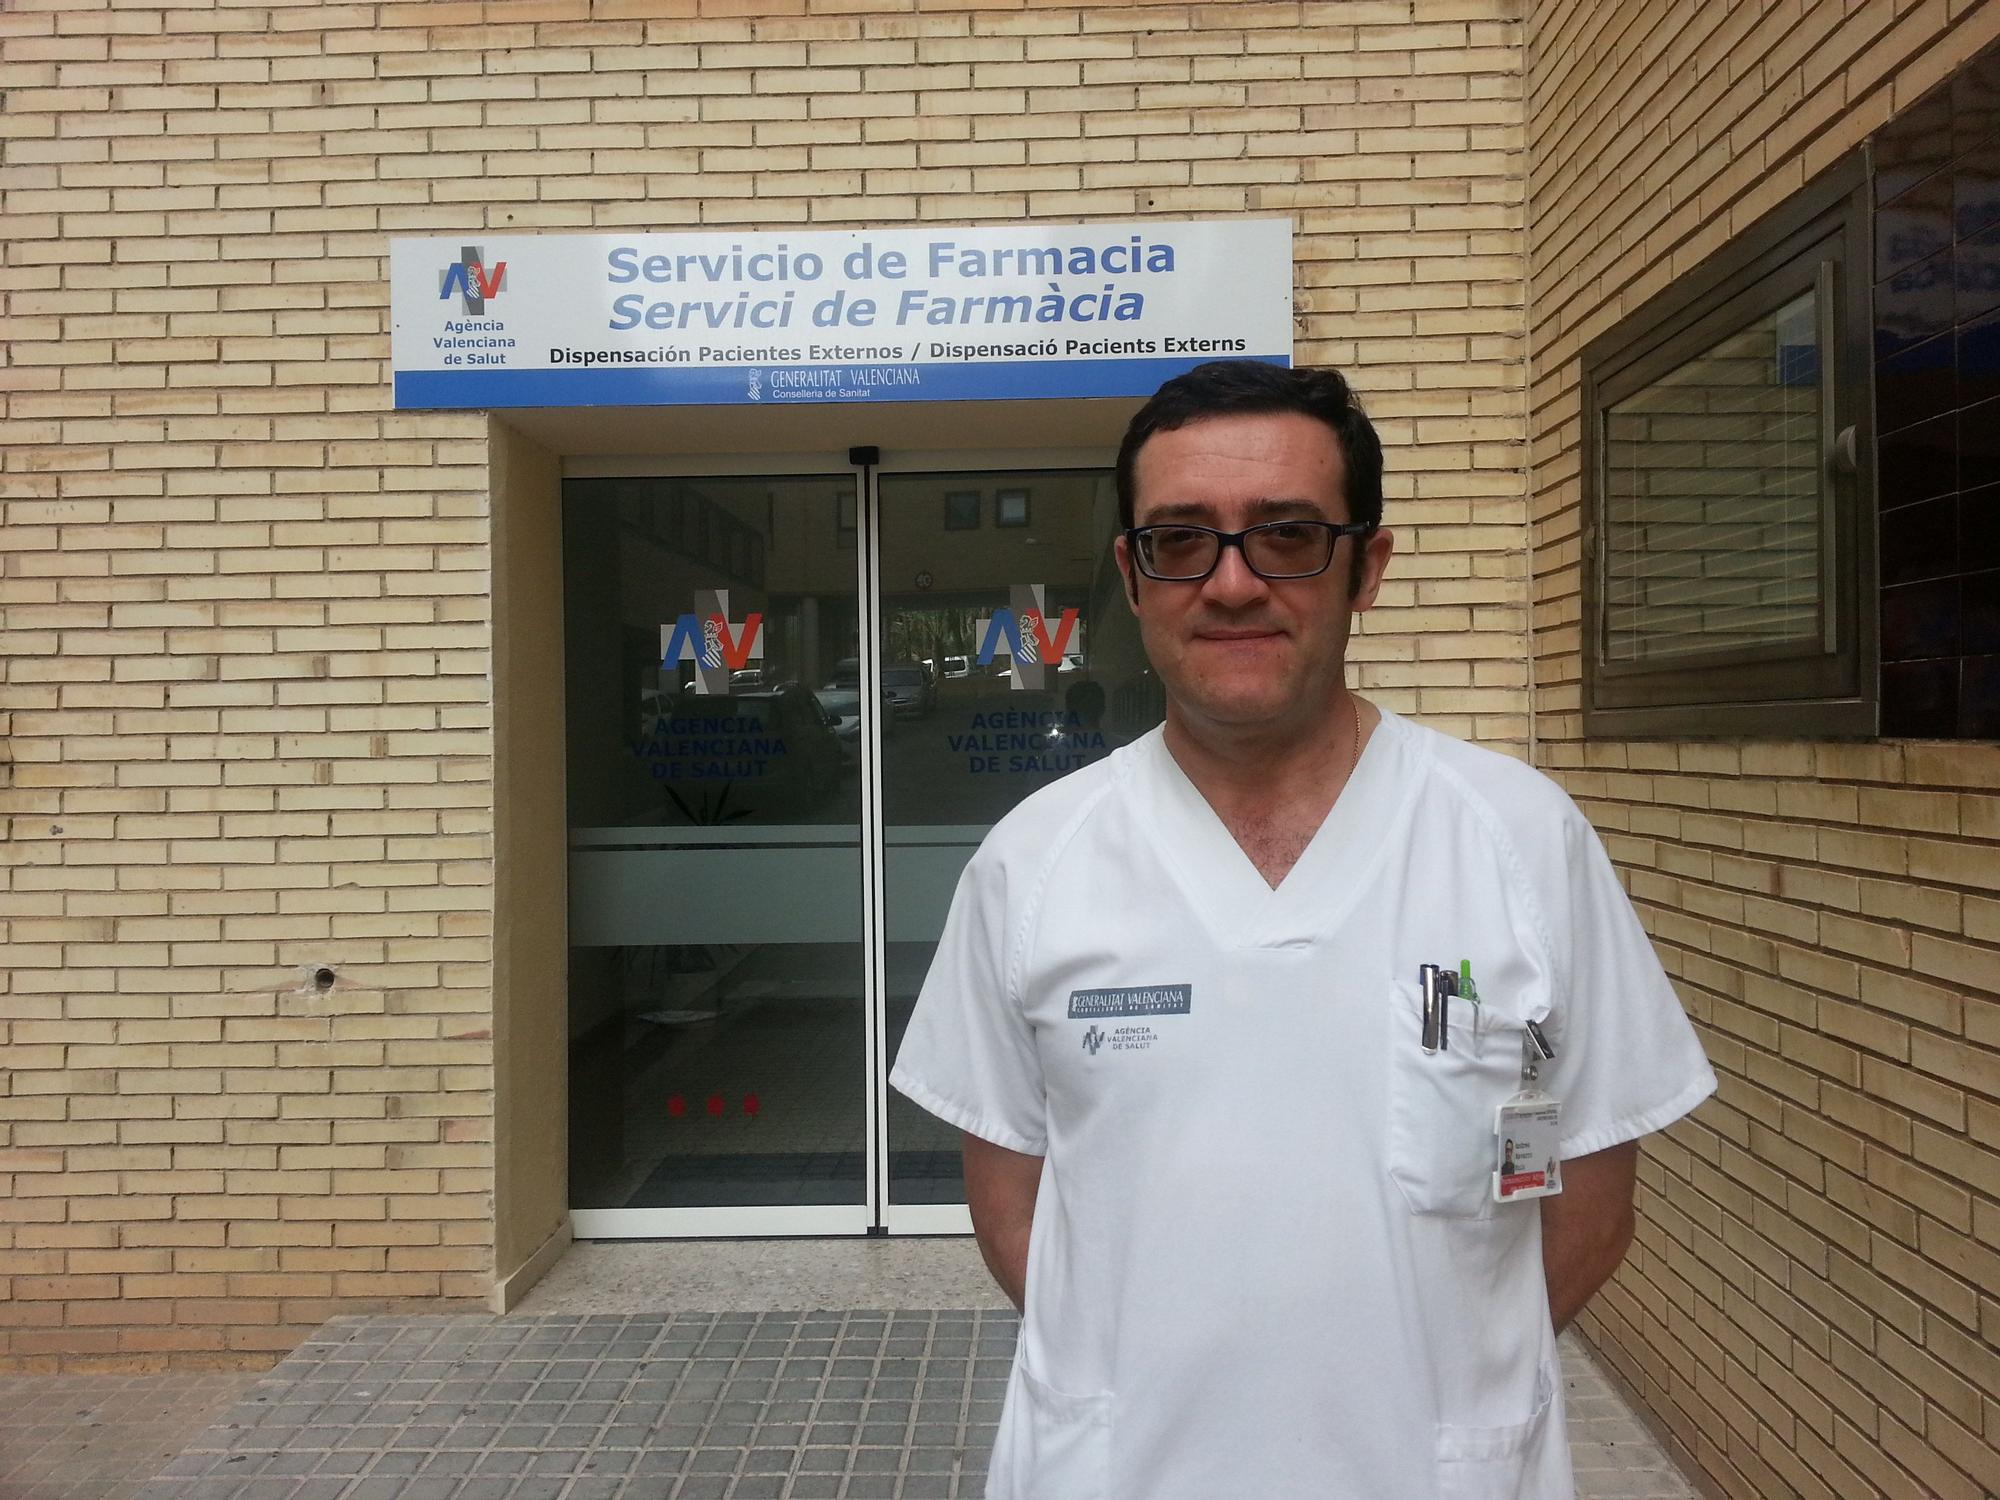 Andrés Navarro, Jefe de Servicio de Farmacia del Hospital General Universitario de Elche.